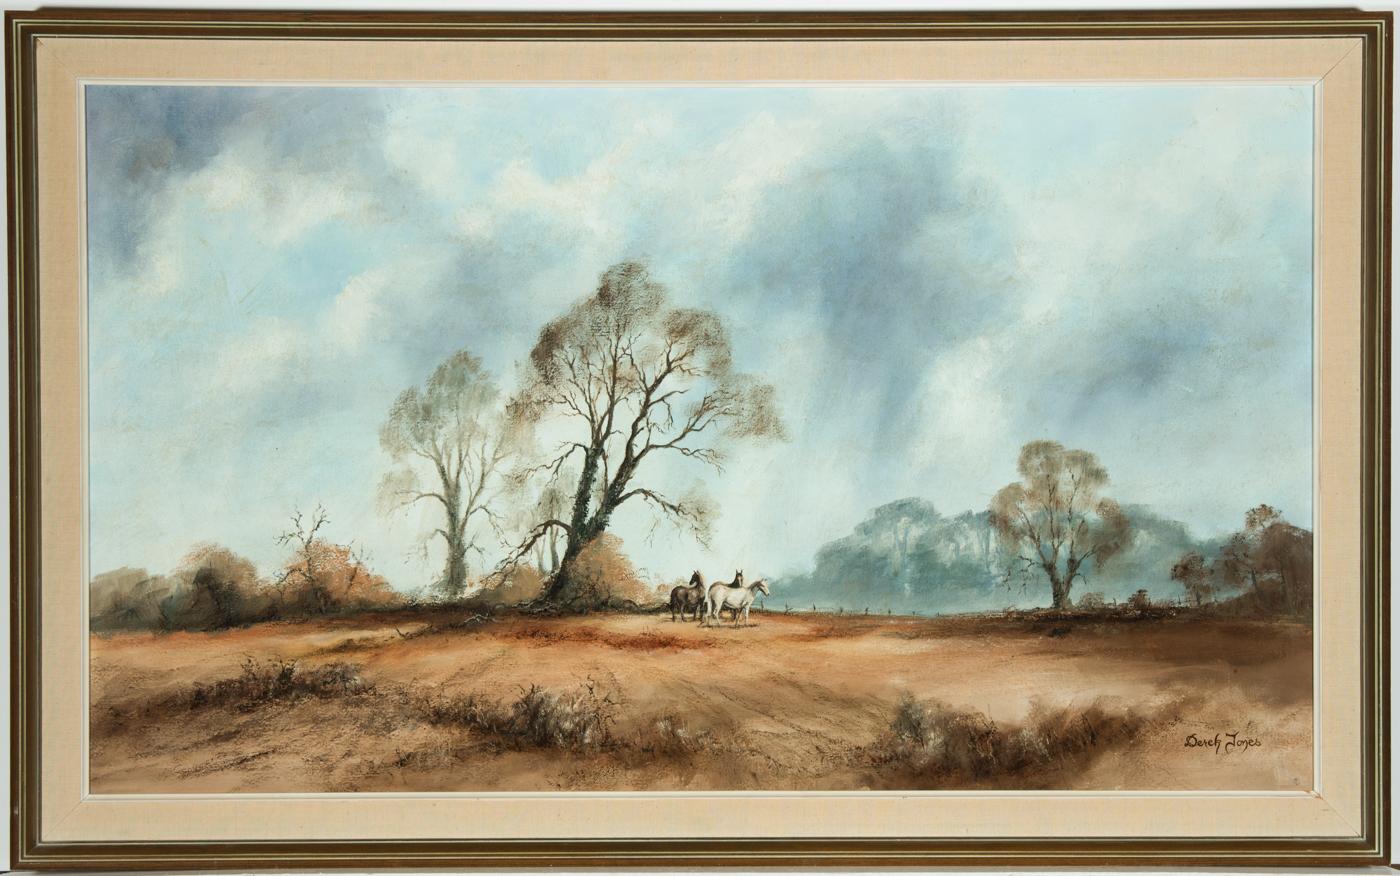 Un vaste paysage rural avec un groupe de chevaux regardant les arbres stériles d'automne. Bien présenté dans un cadre moderne effet bois avec un slip en toile de jute. Il y a une inscription cadeau au revers qui est datée de 1978. Signé. Sur toile